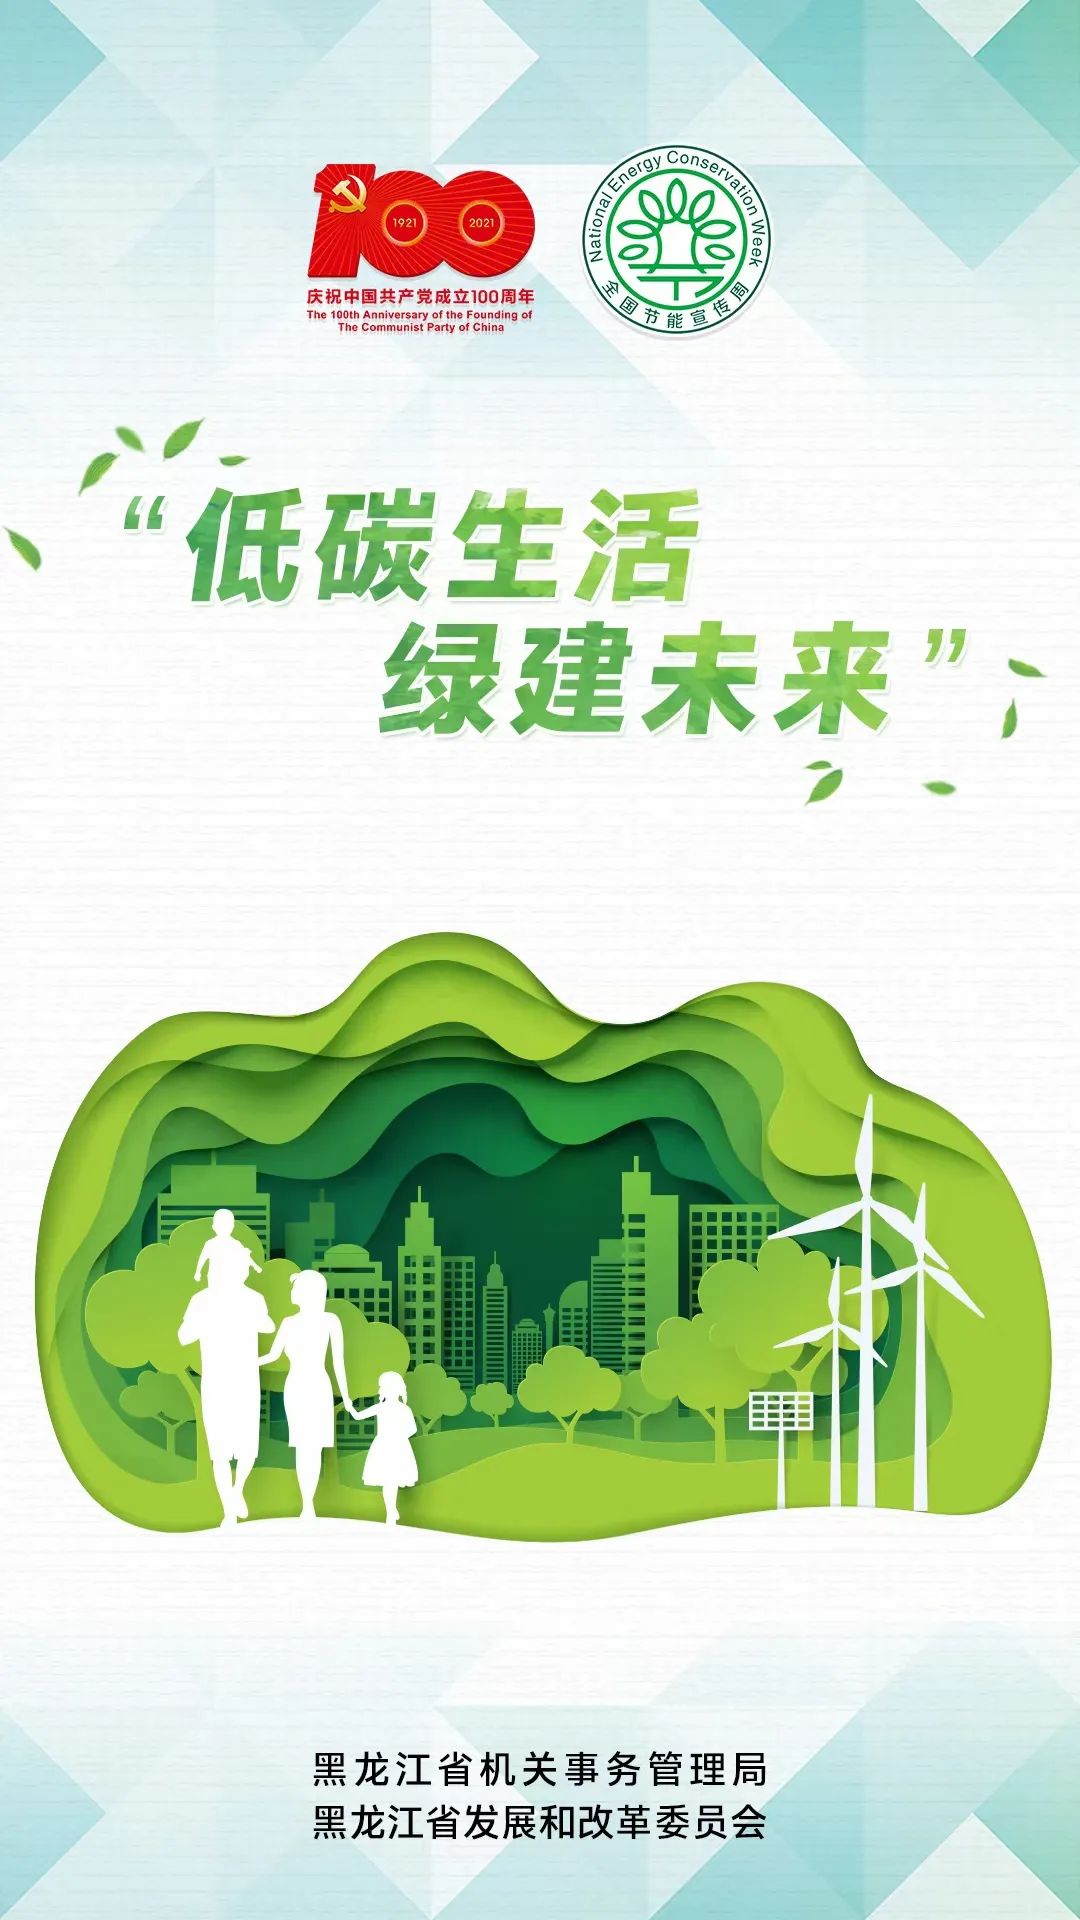 节能降碳绿色发展倡导绿色低碳生活方式